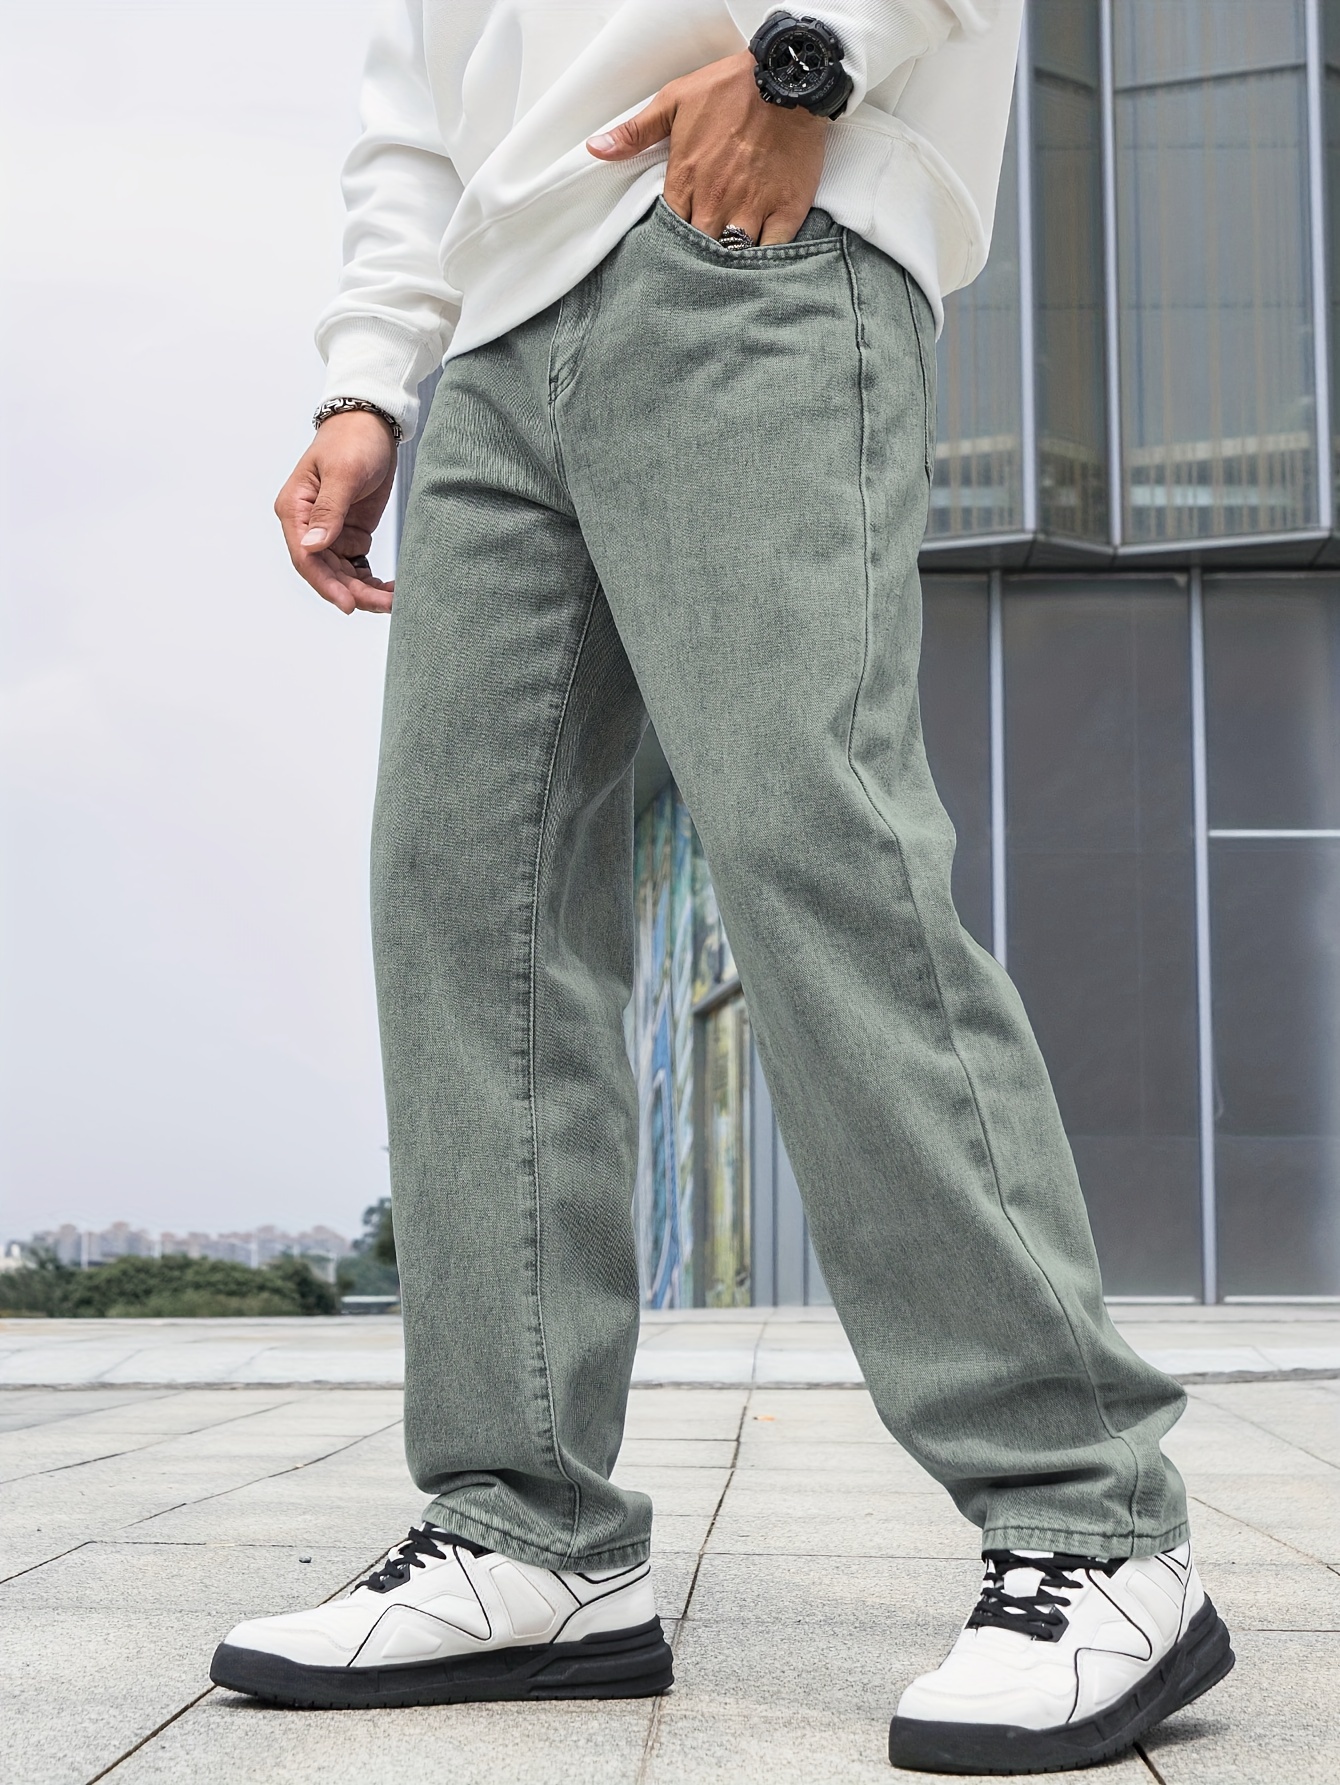 Loose Fit Wide Leg Jeans Men's Casual Distressed Denim Pants - Temu